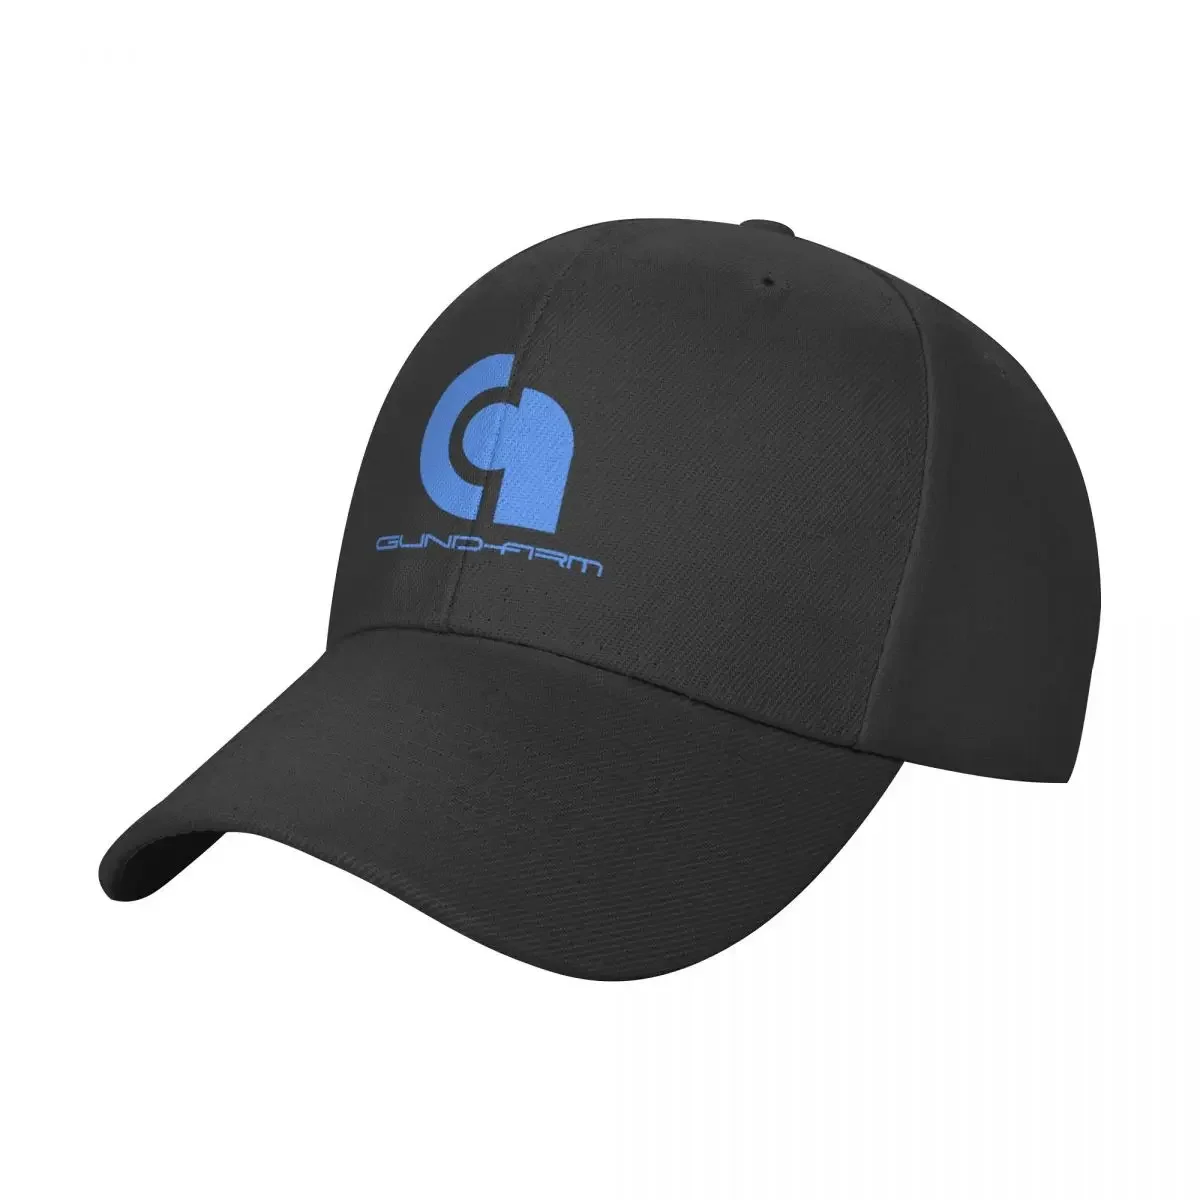 GUND-ARM Inc. Baseball Cap dad hat Luxury Hat Designer Man Women's